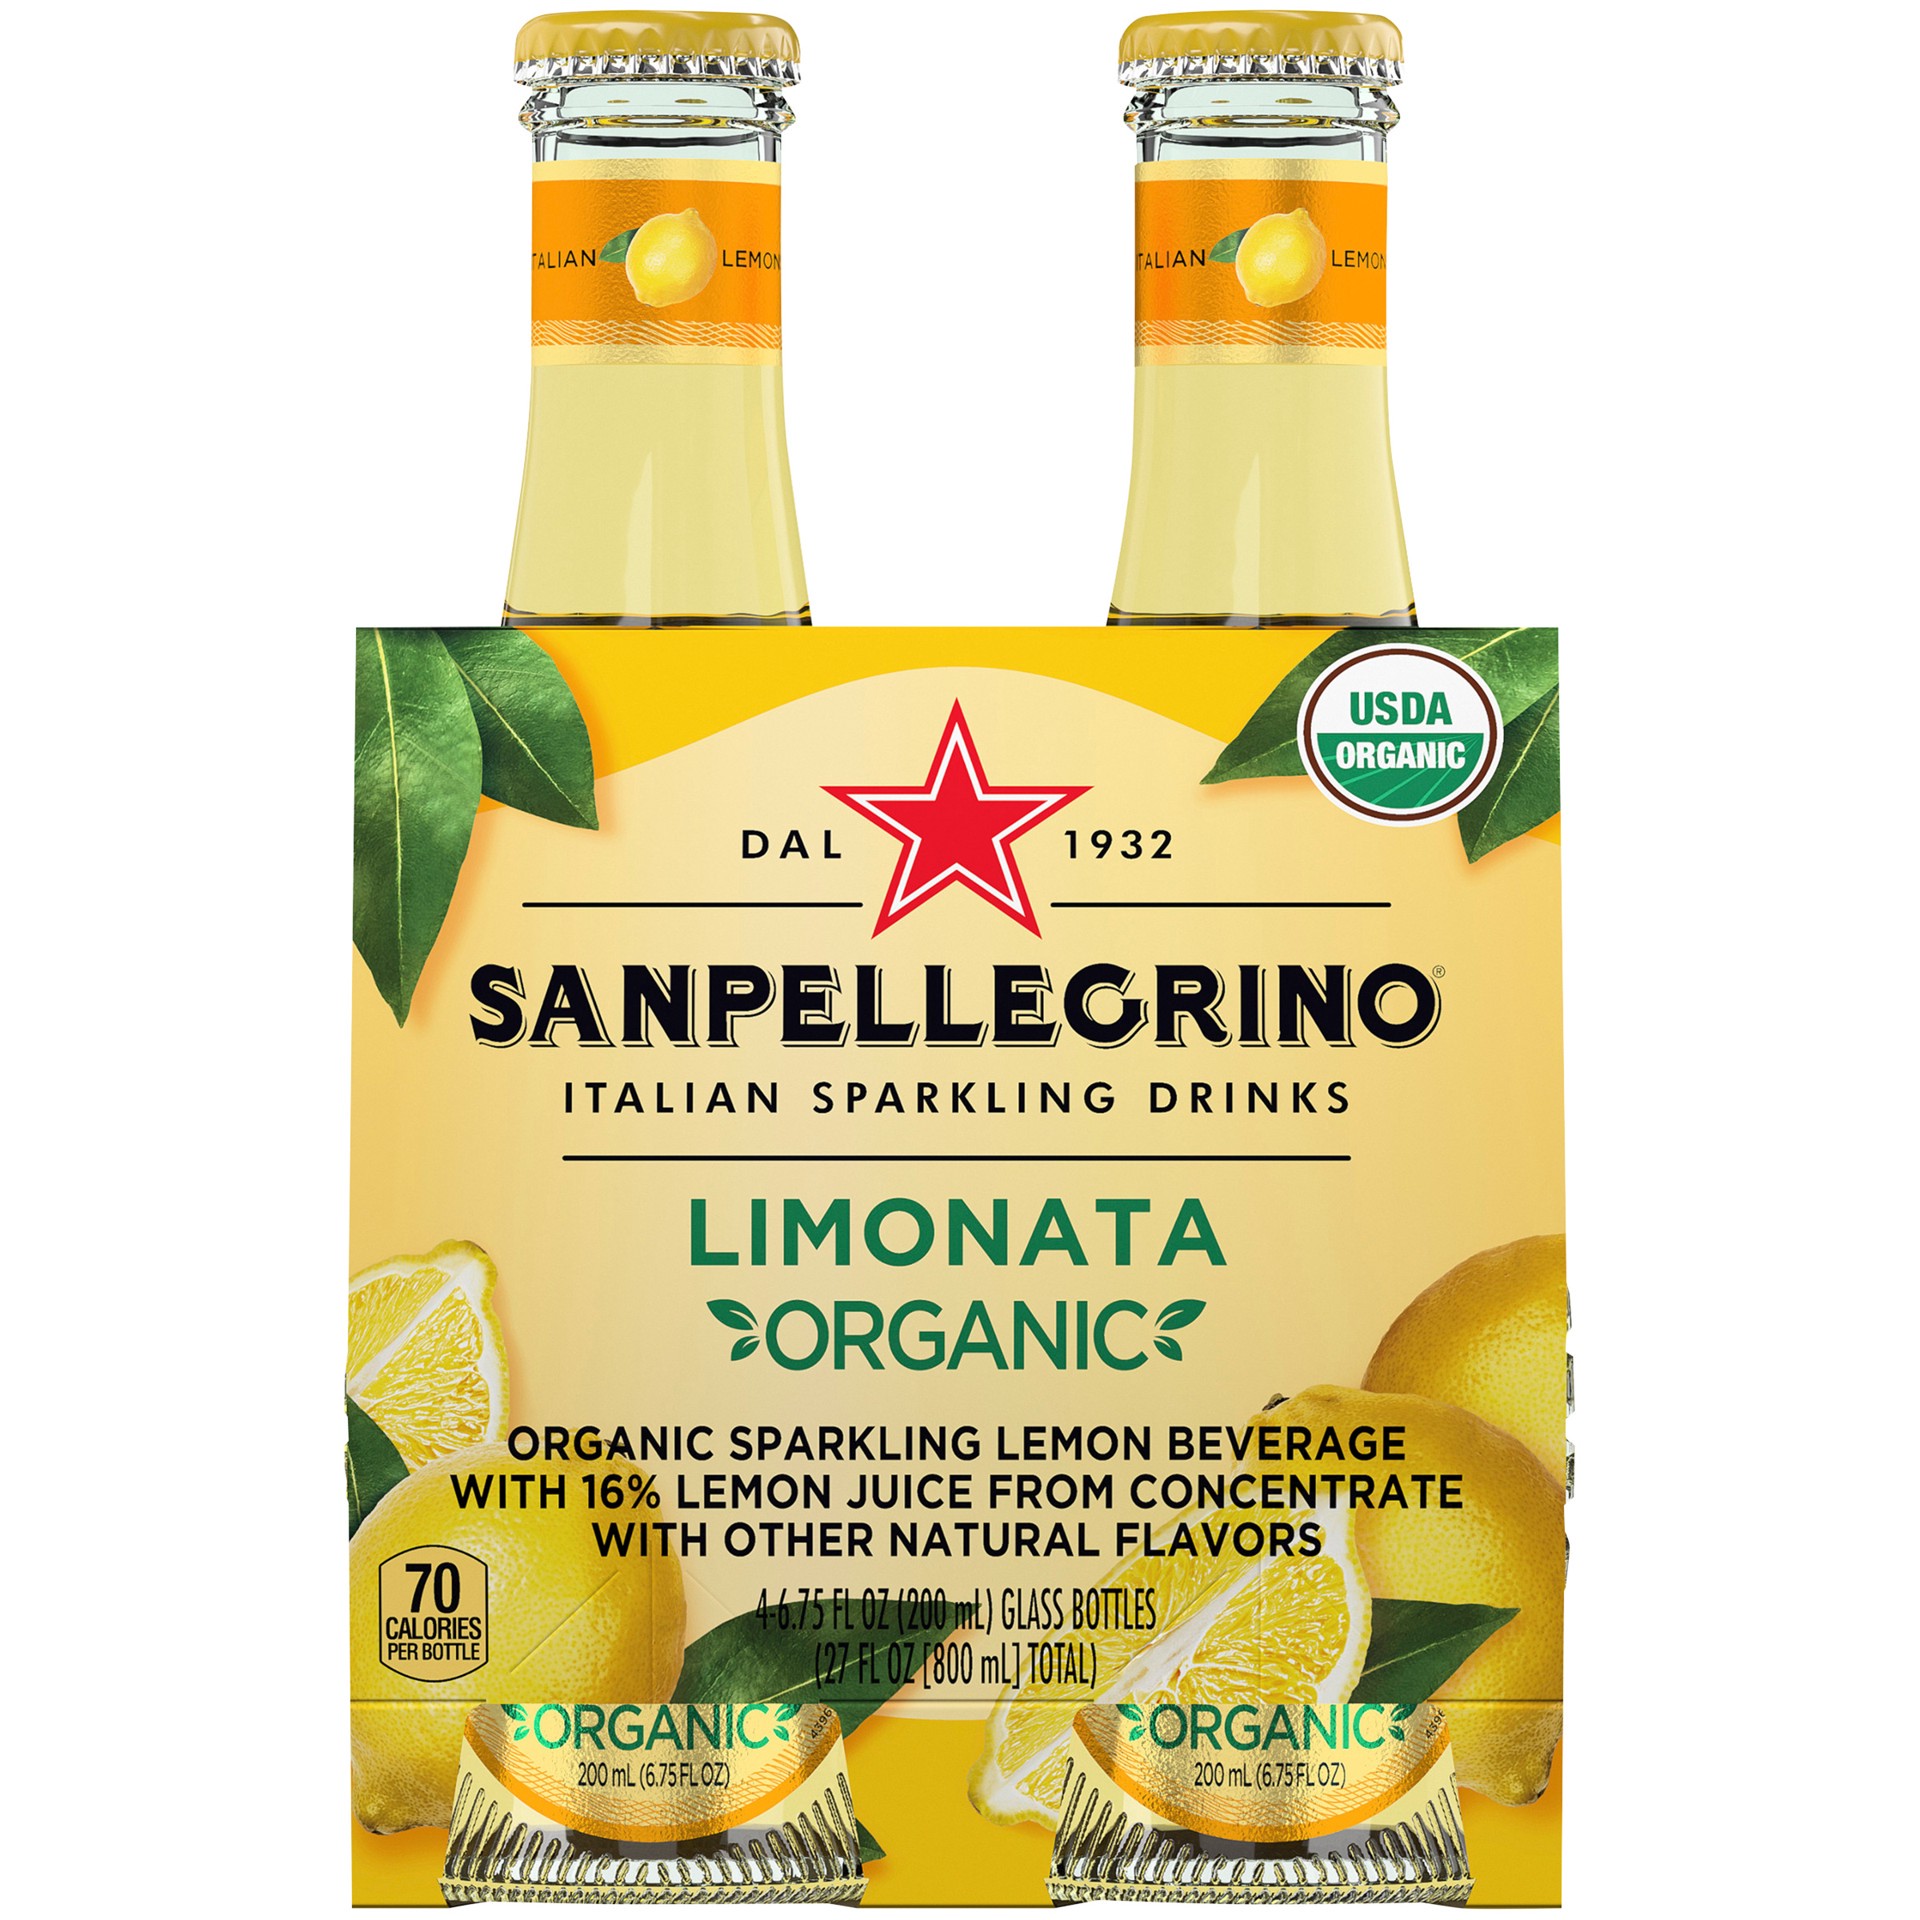 slide 1 of 9, SANPELLEGRINO Italian Sparkling Drinks Organic Limonata, 6.76 oz. glass bottle 4-pack, 27 oz